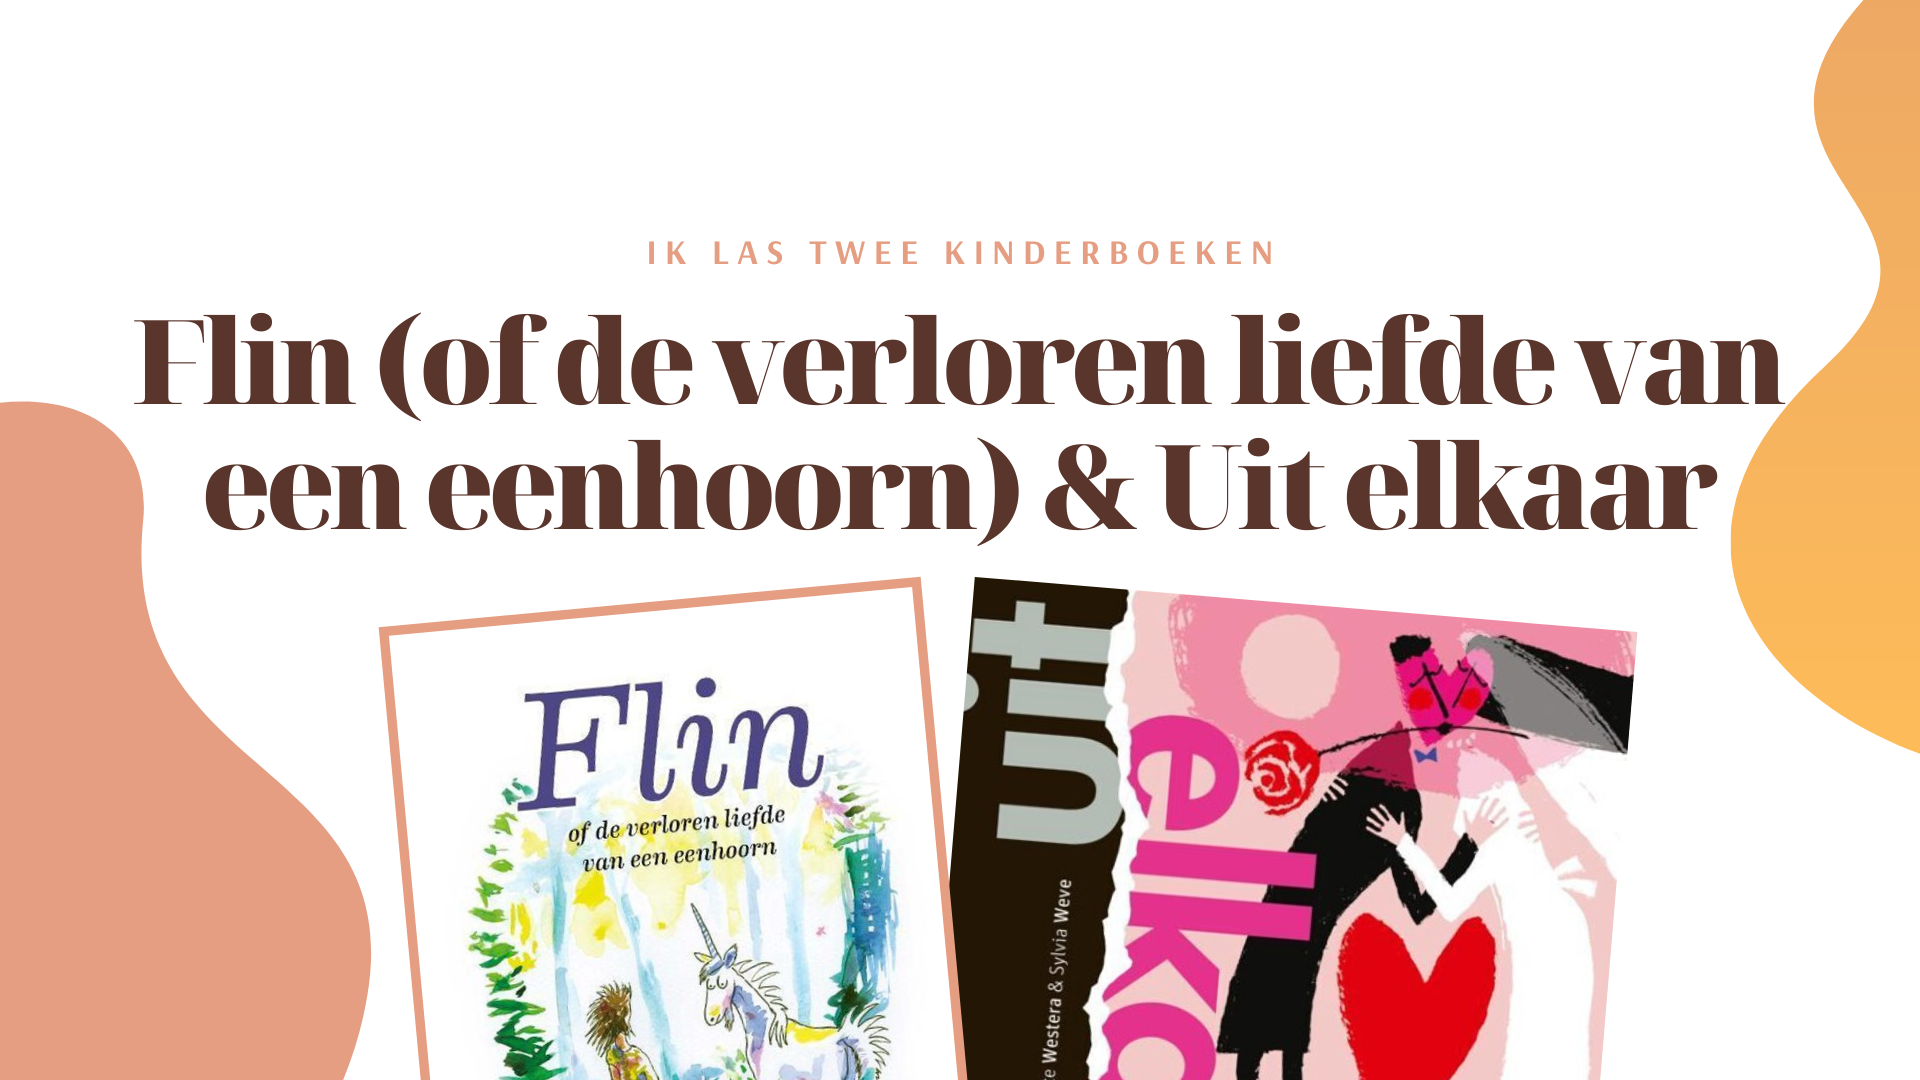 Twee kinderboeken die ik las: Flin & Uit elkaar